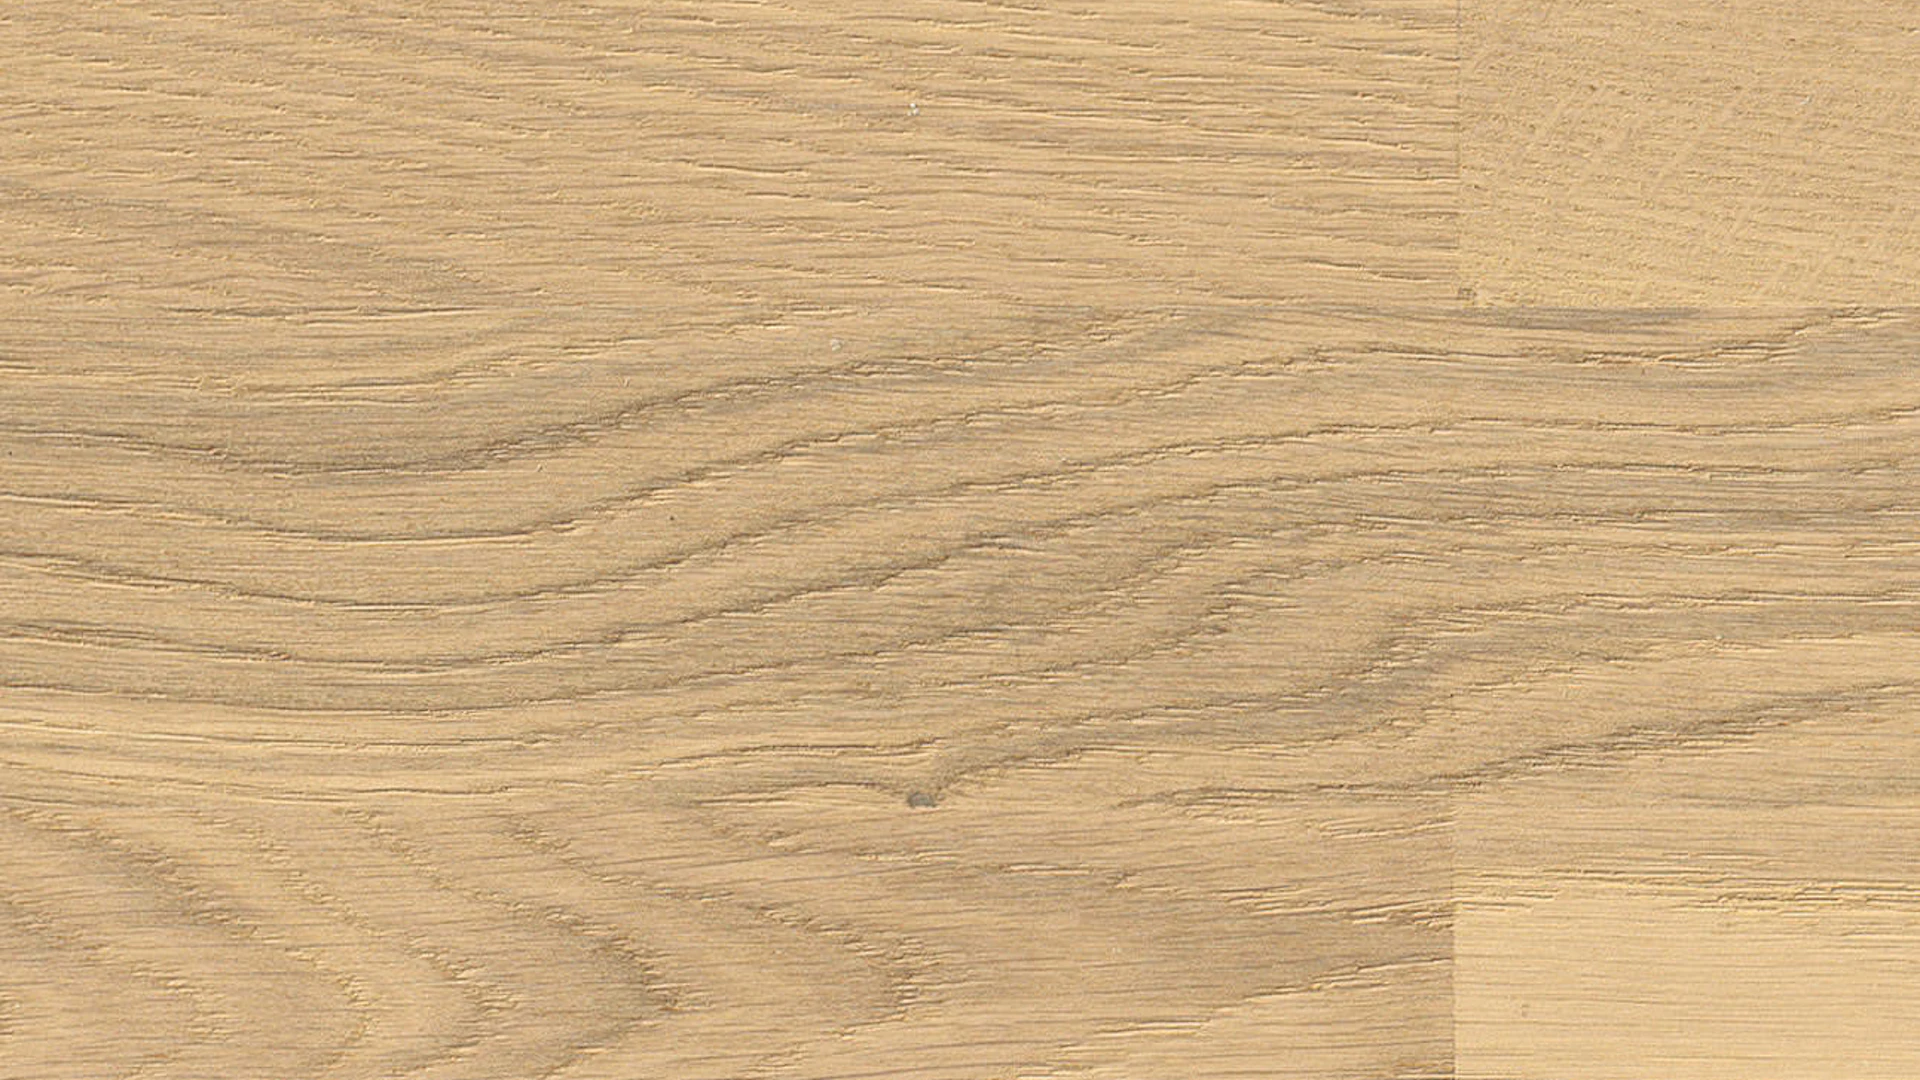 Haro Parquet Flooring - Series 4000 Stab Allegro naturaLin plus Oak invisible Trend (540132)